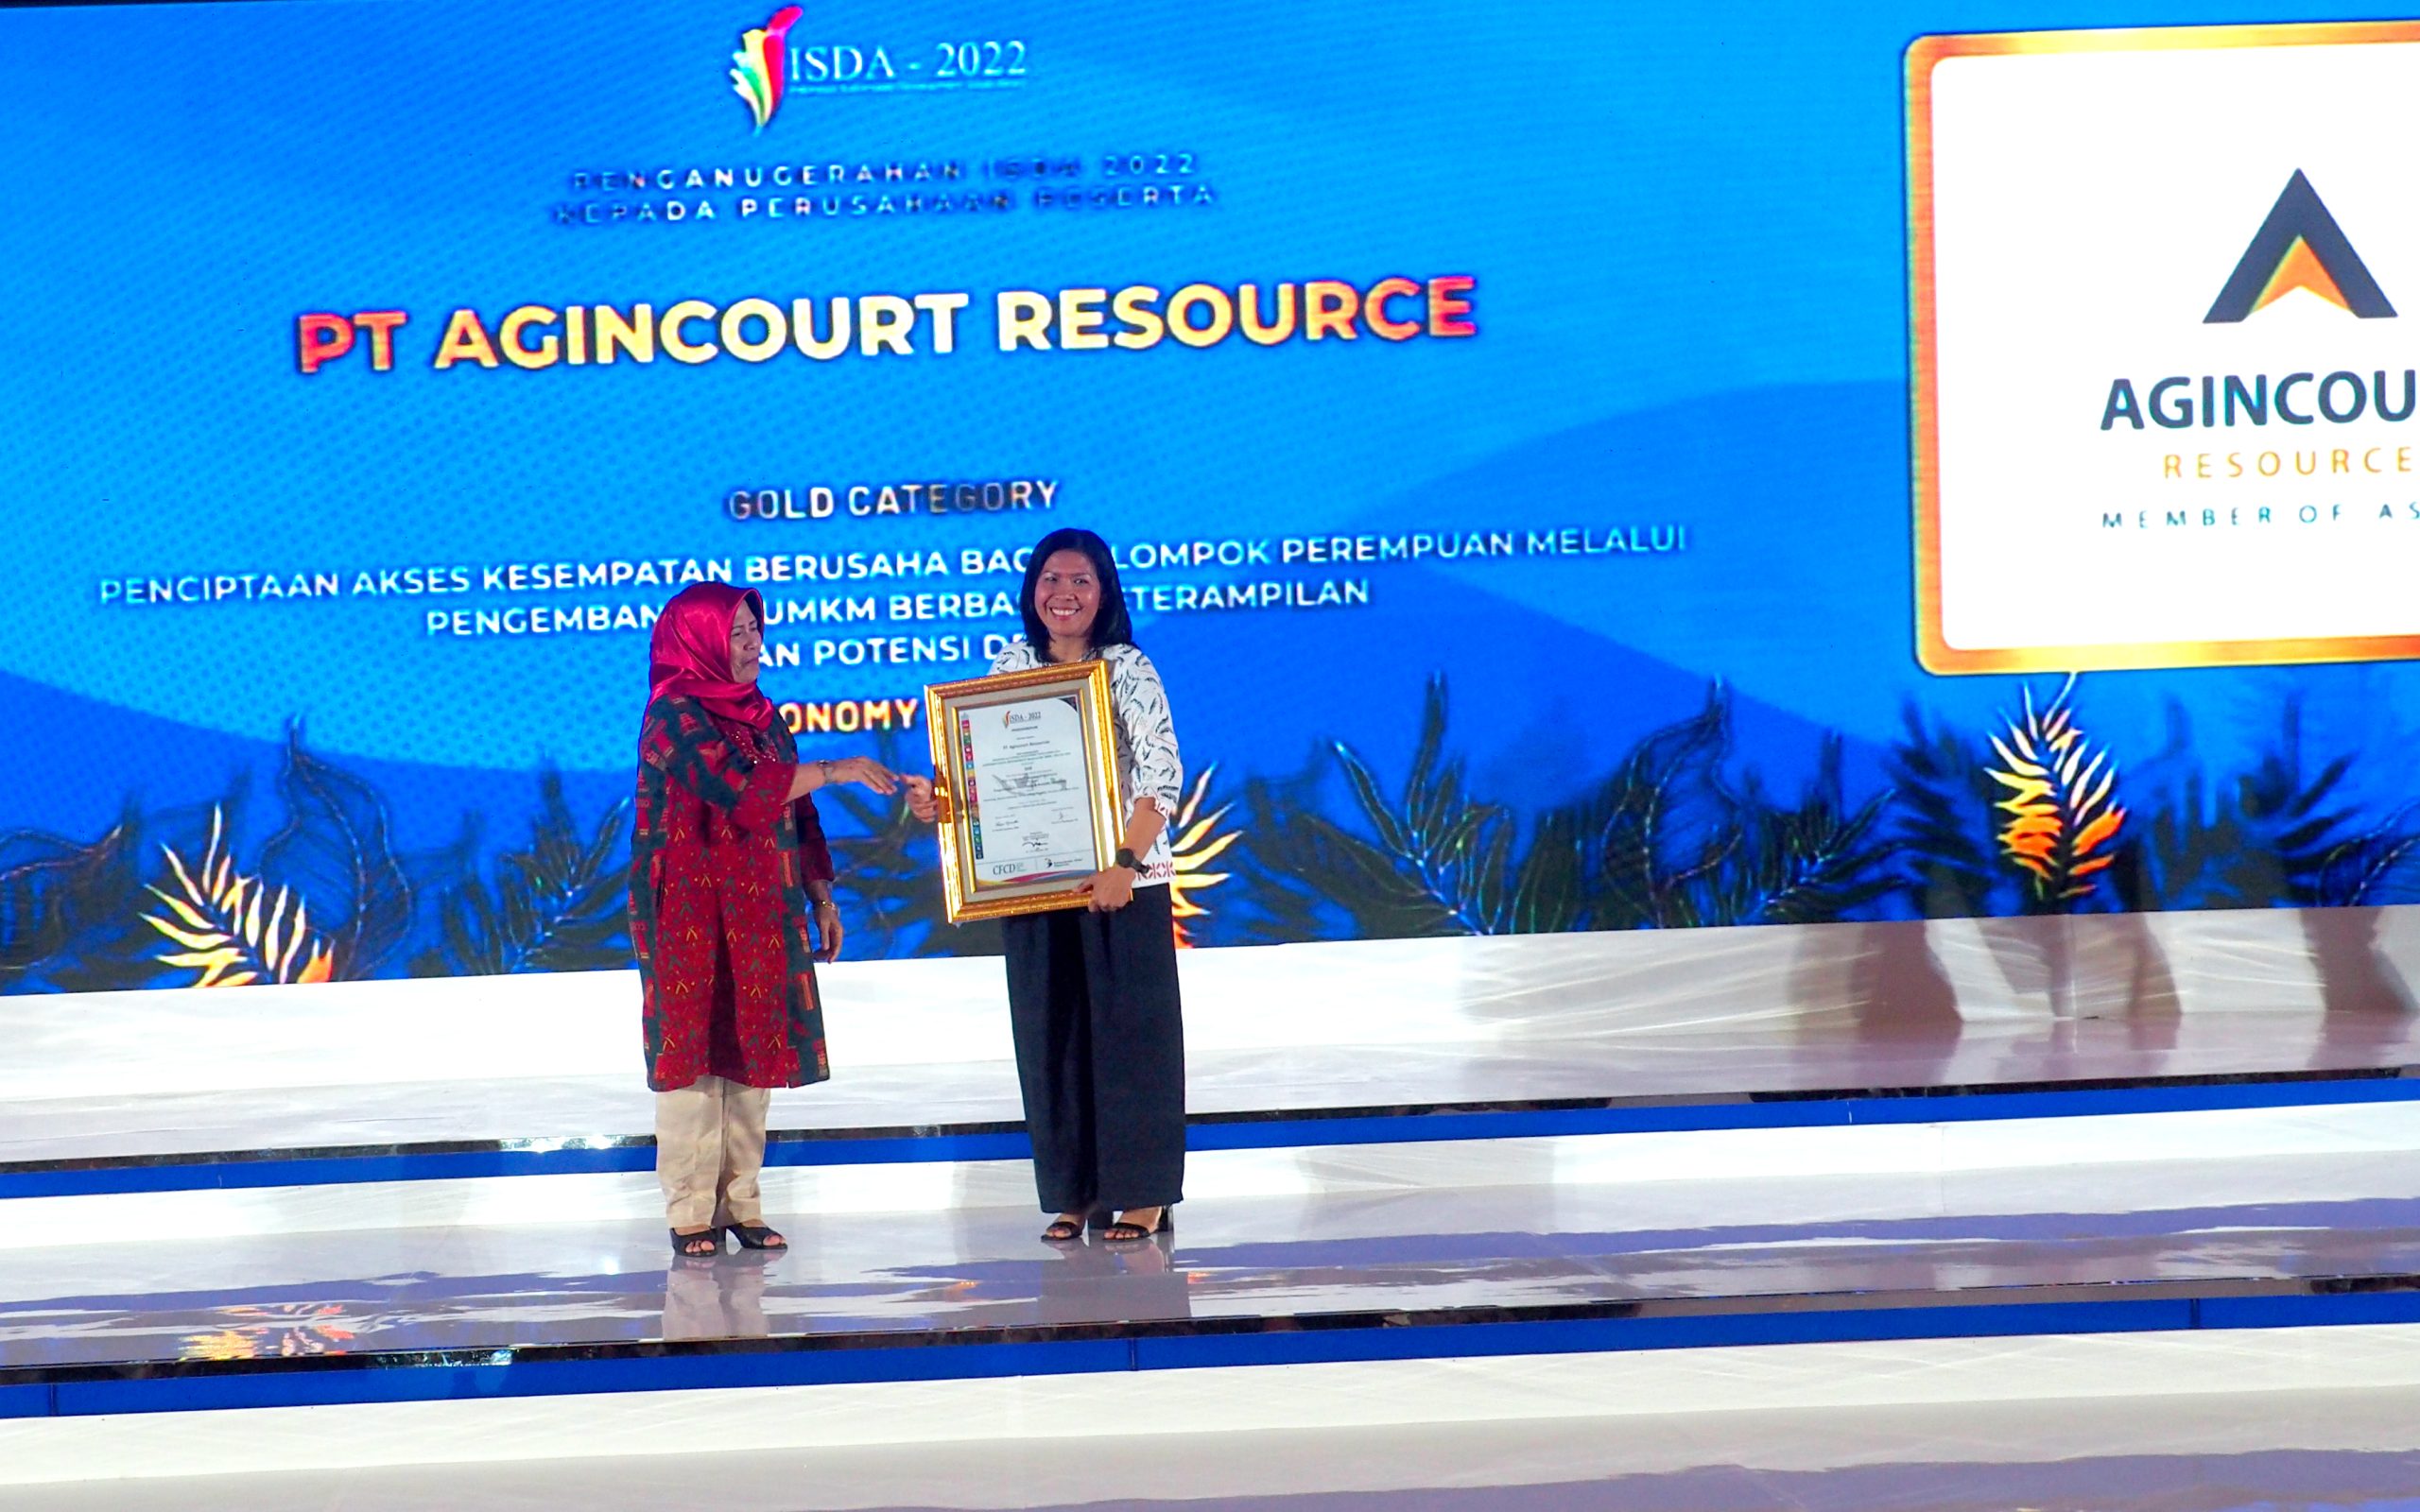 Penghargaan Emas Penciptaan Akses Kesempatan Berusaha Bagi Kelompok Perempuan Melalui Pengembangan UMKM Berbasis Keterampilan dan Potensi Desa dalam Indonesian Sustainable Development Goals Award (ISDA) 2022